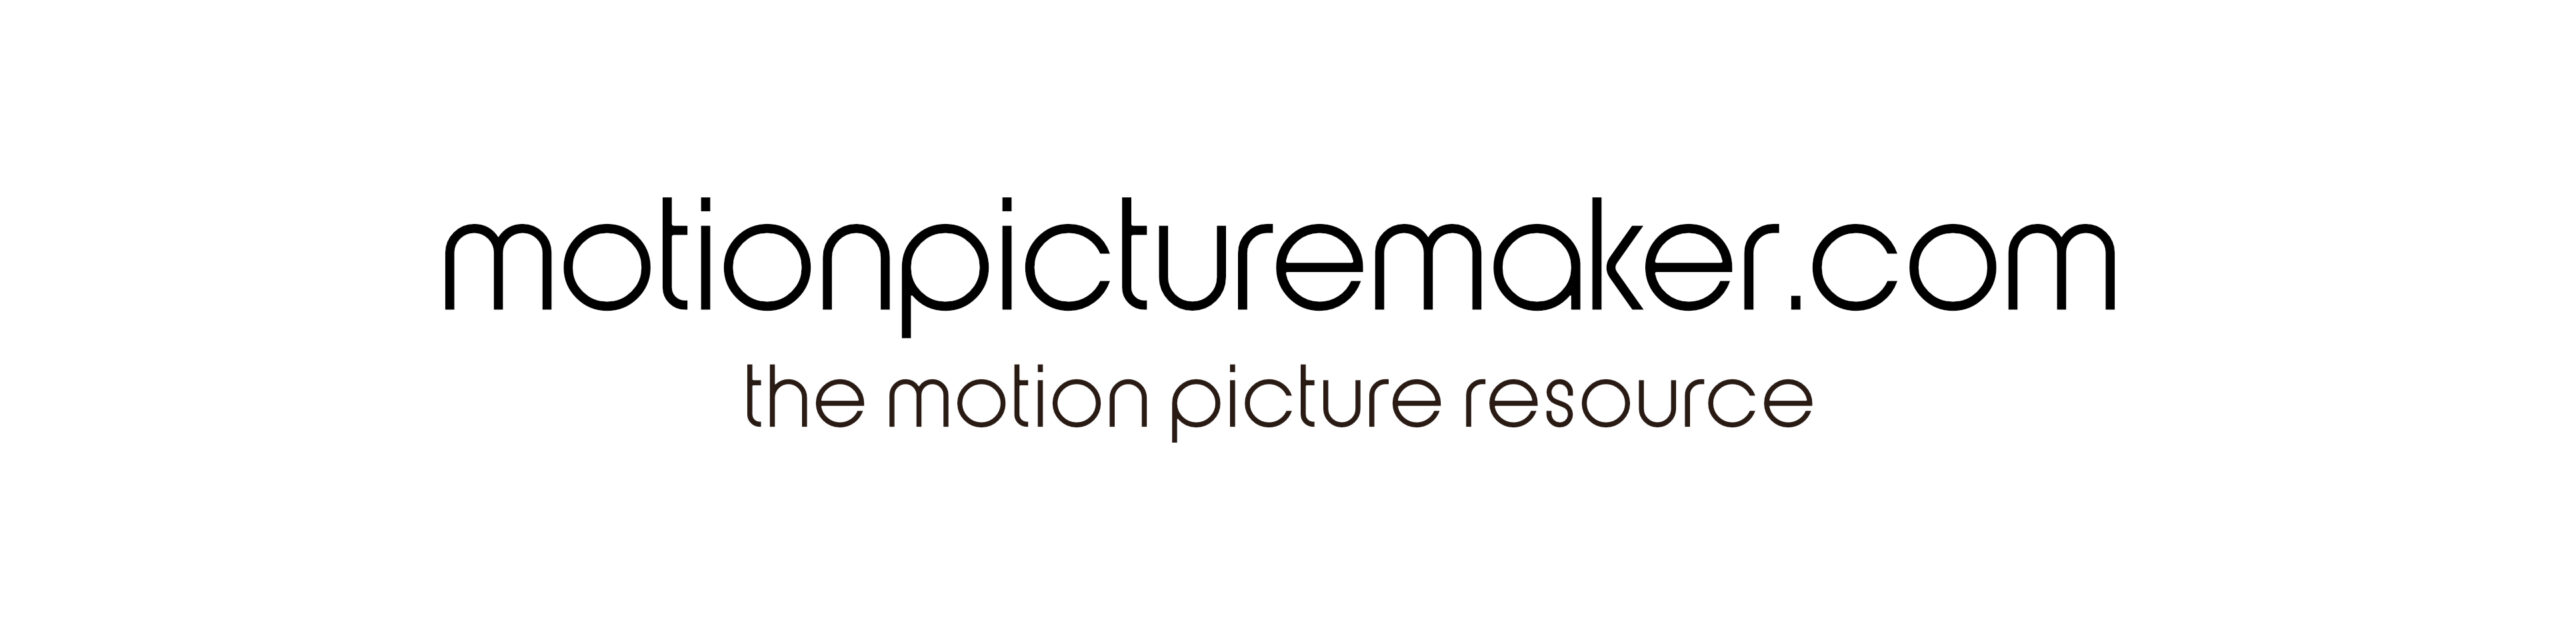 motionpicturemaker.com header image